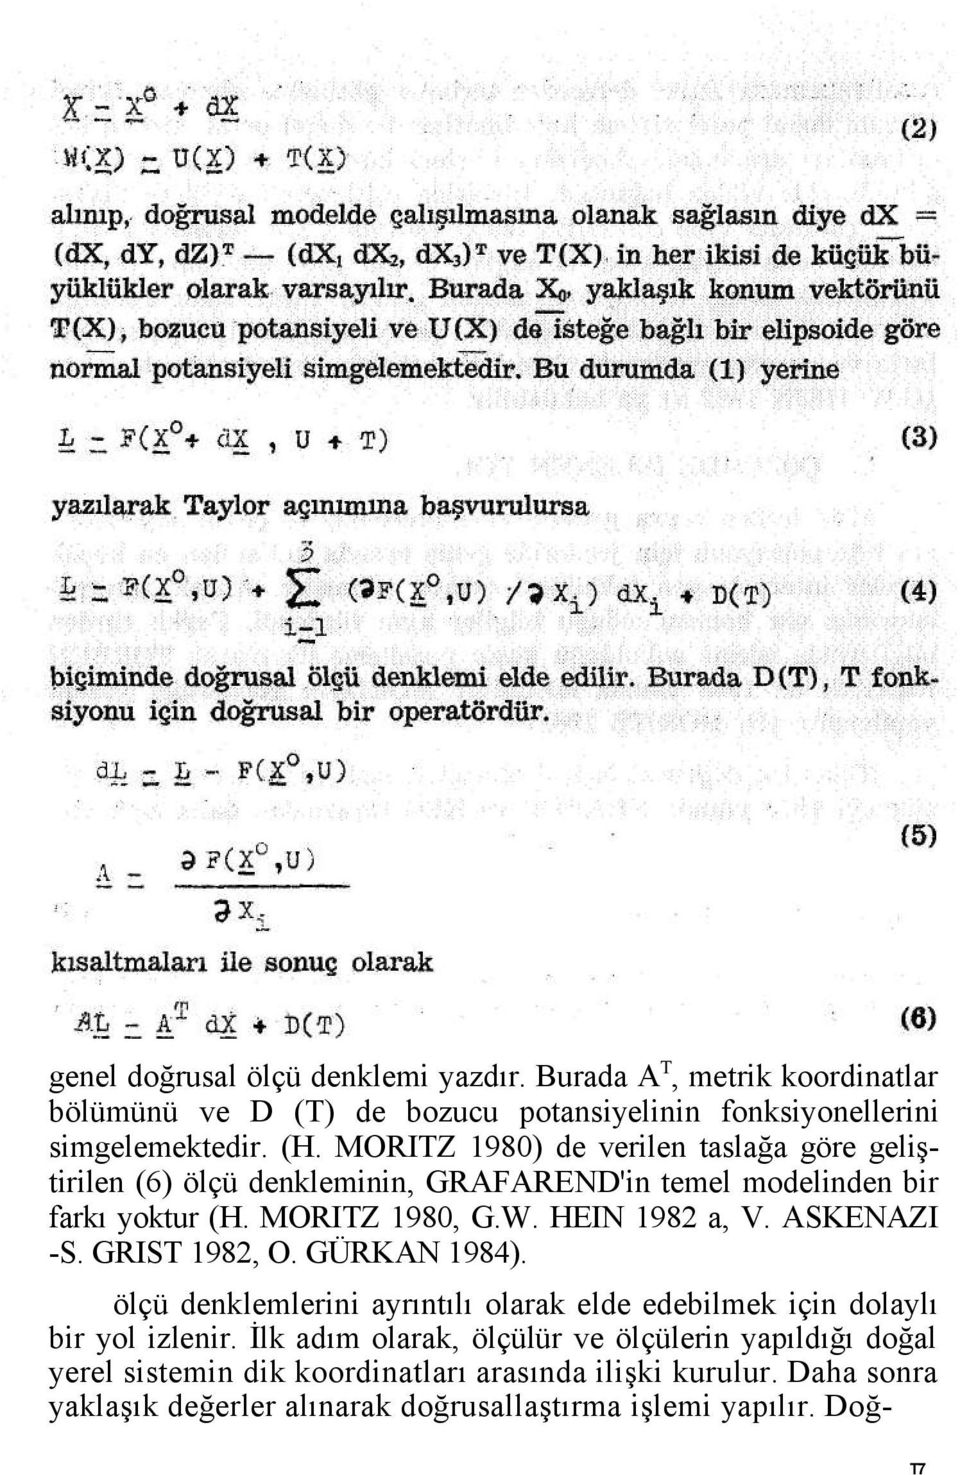 ASKENAZI -S. GRIST 1982, O. GÜRKAN 1984). ölçü denklemlerini ayrıntılı olarak elde edebilmek için dolaylı bir yol izlenir.